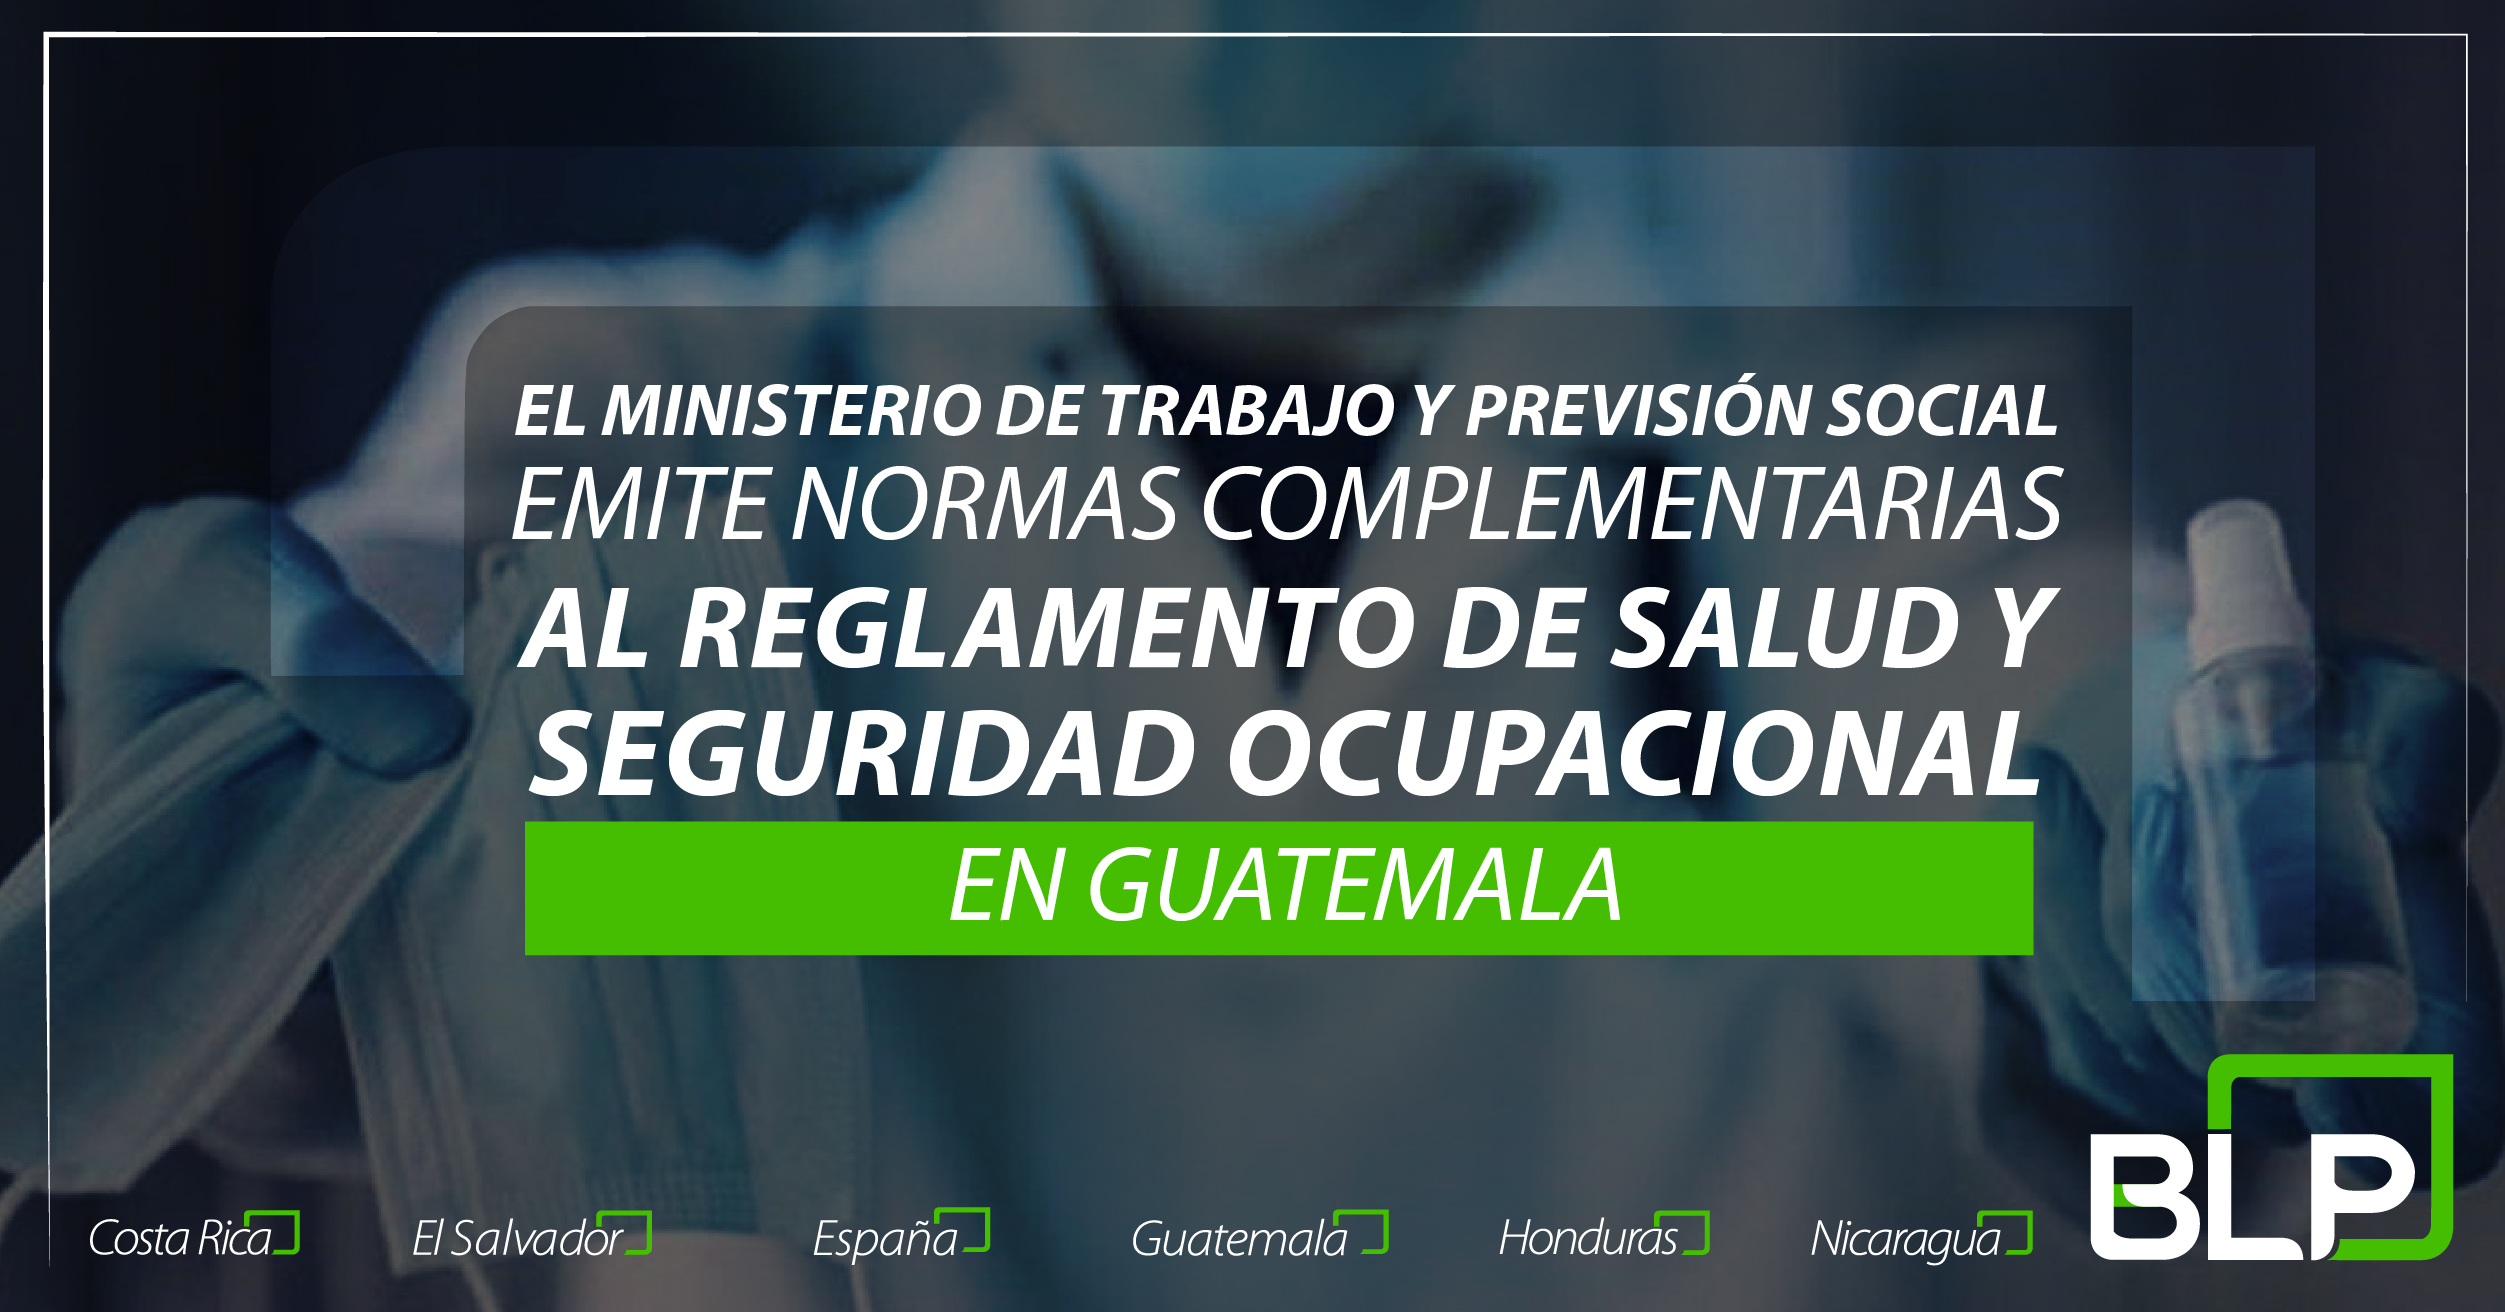 El Ministerio de Trabajo y Previsión Social emite normas complementarias al Reglamento de Salud y Seguridad Ocupacional.